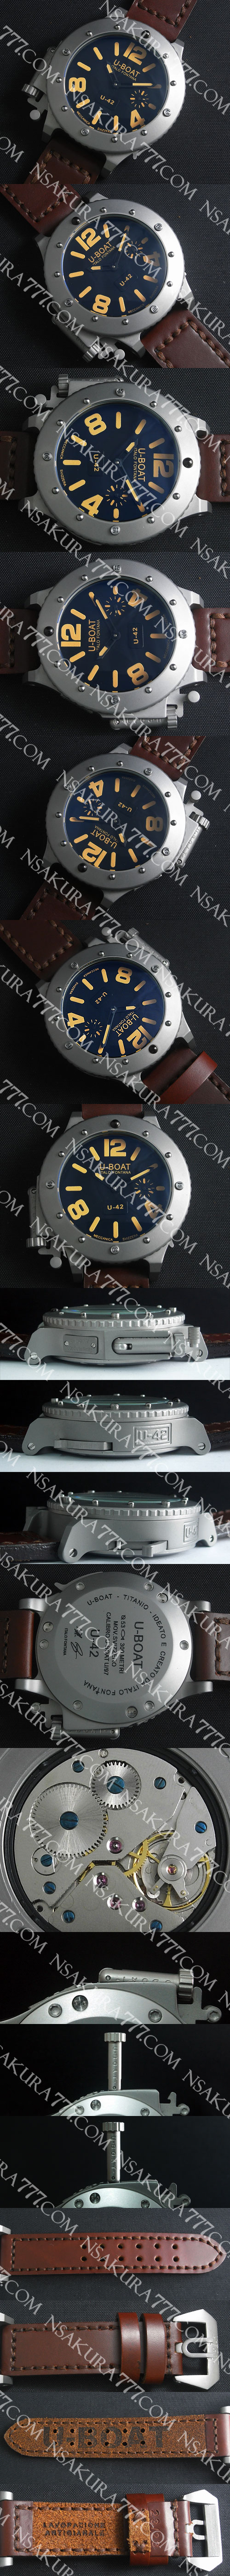 レプリカ時計ユーボート U-42 53mm サブマーシブル 18800振動(手巻き) - ウインドウを閉じる